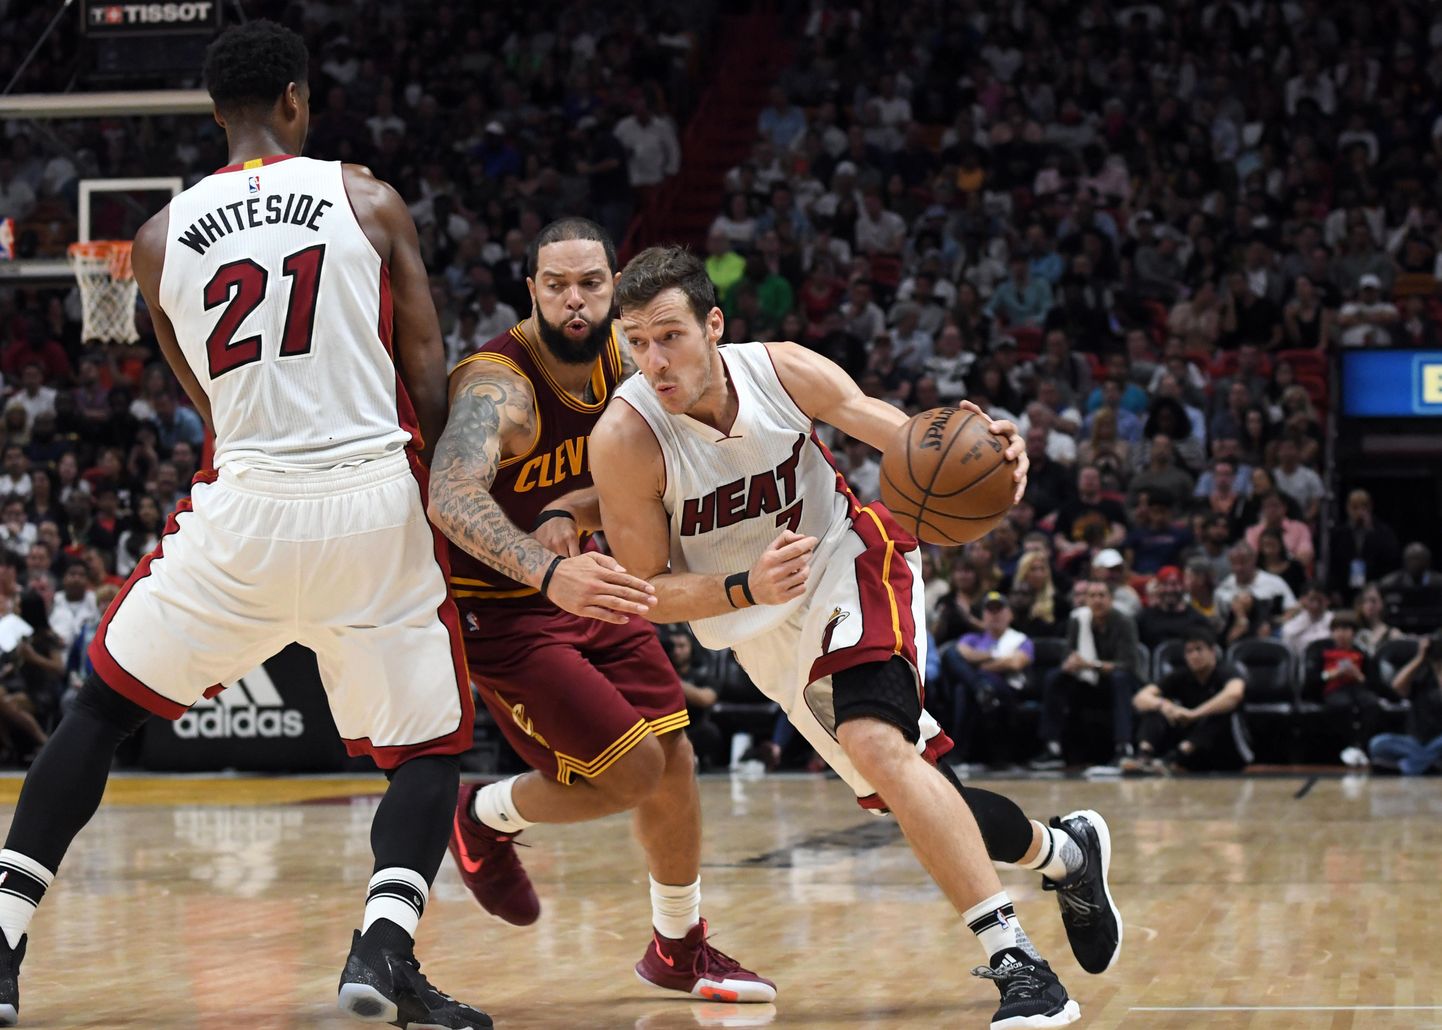 Miami Heat jätkab jahti edasipääsule.